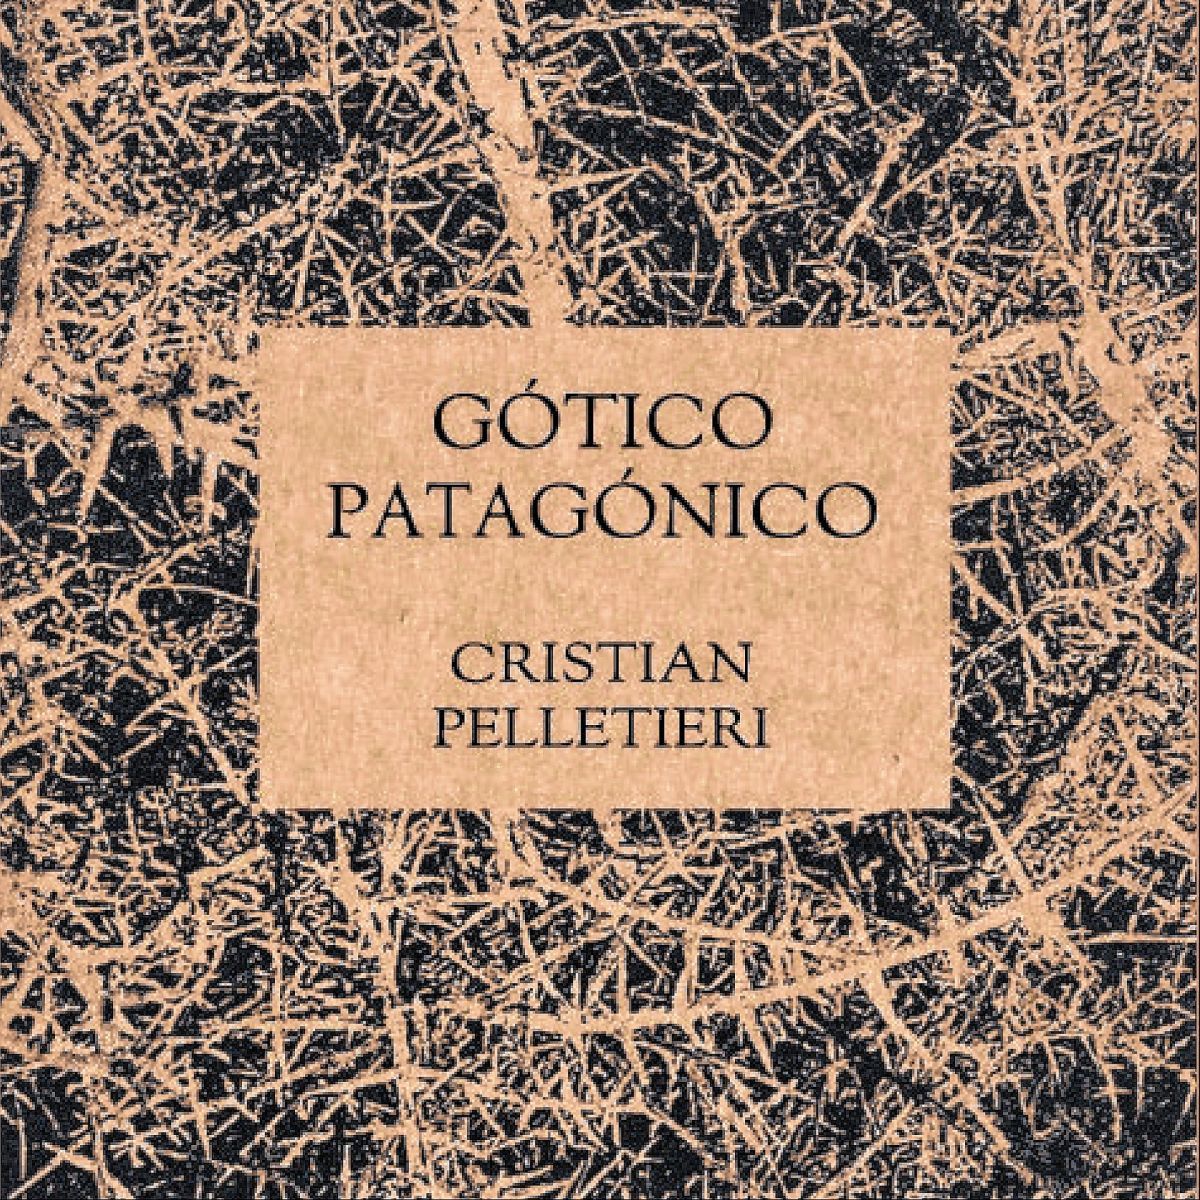 La Editorial Biblioteca Popular Astra anuncia el lanzamiento de la preventa de la publicación Gótico Patagónico del escritor Cristian Pelletieri